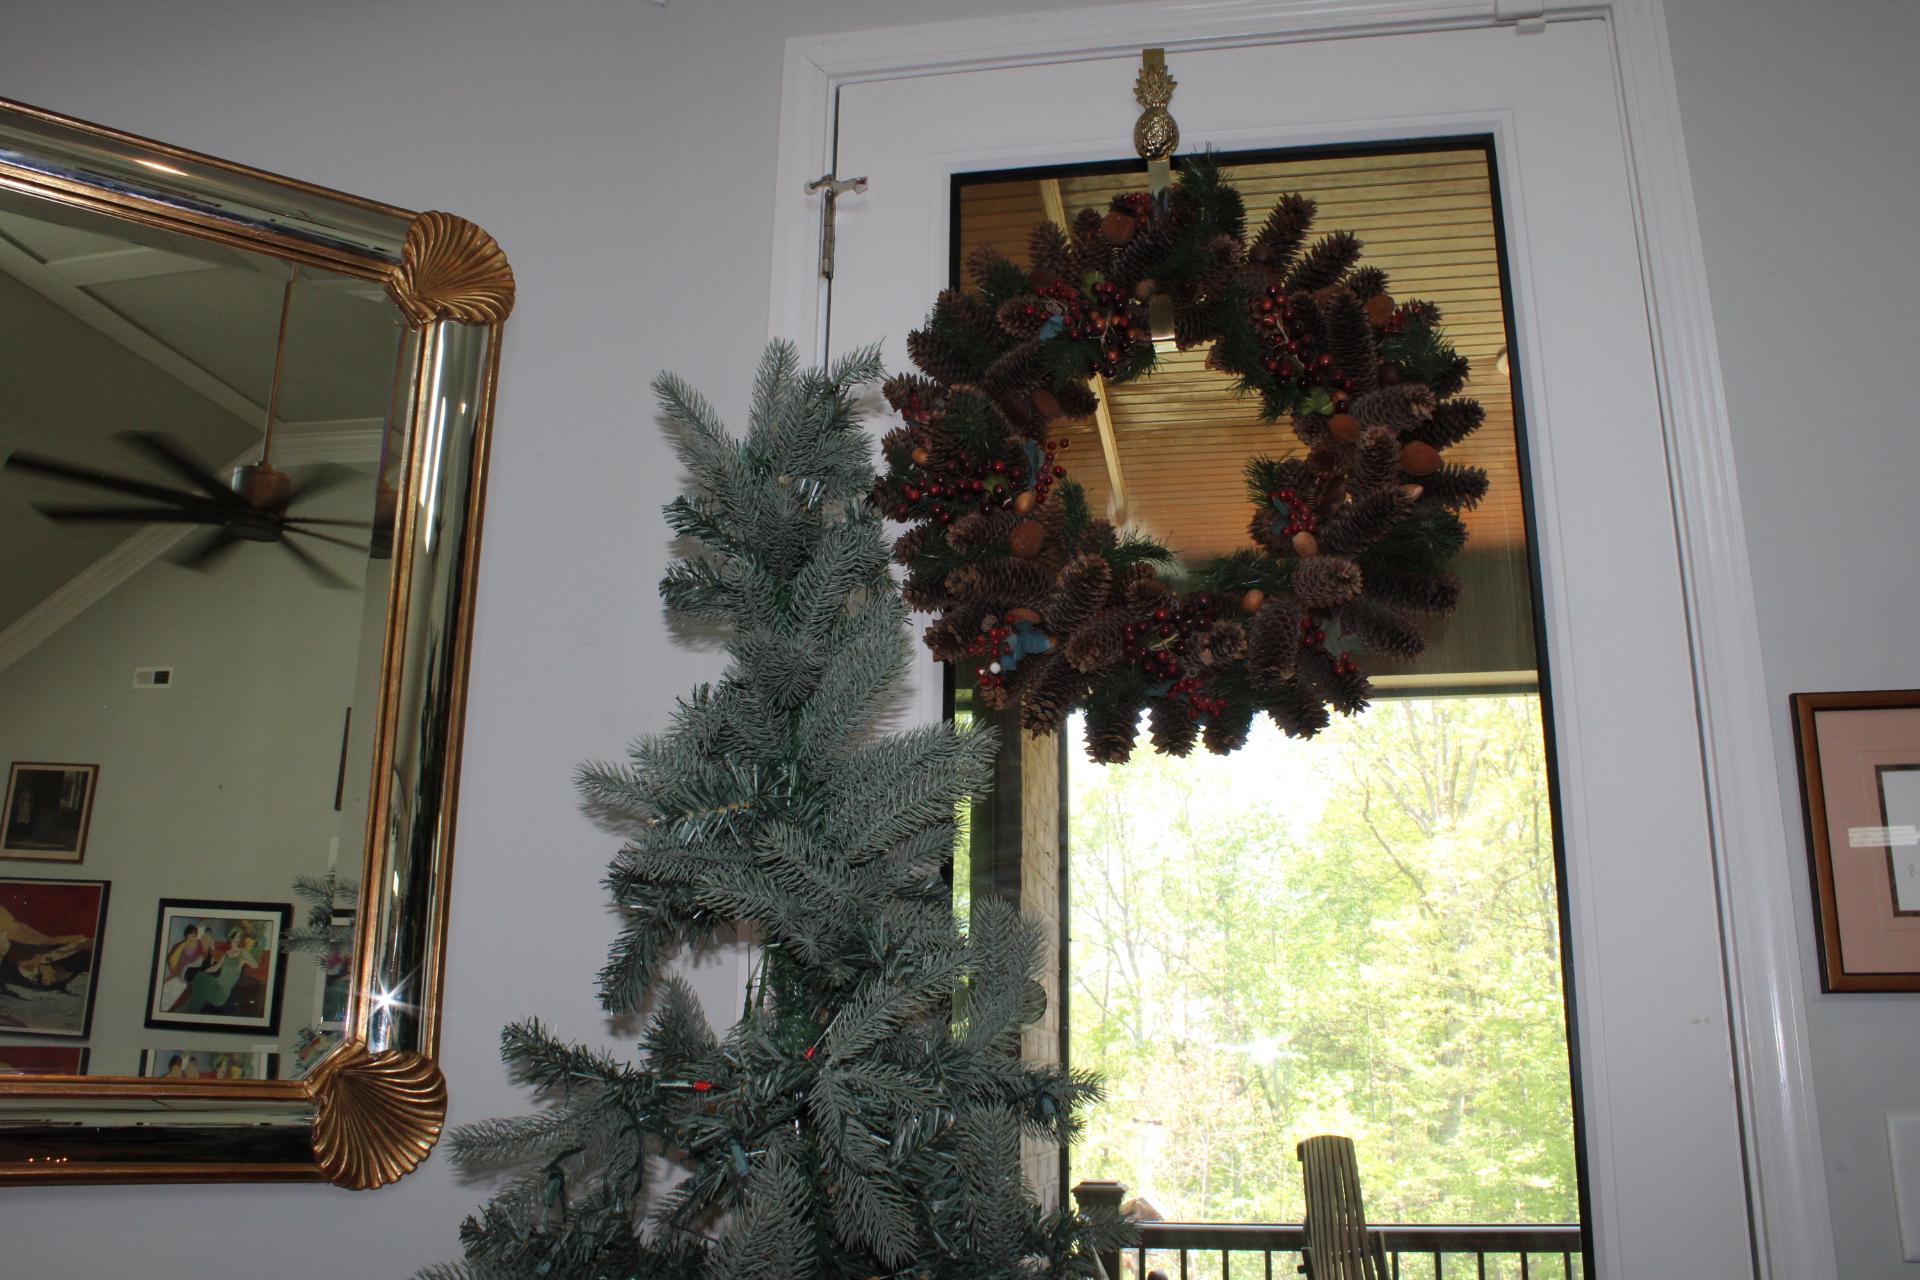 6ft Christmas Tree, Wreath, Pineapple wreath door hanger.